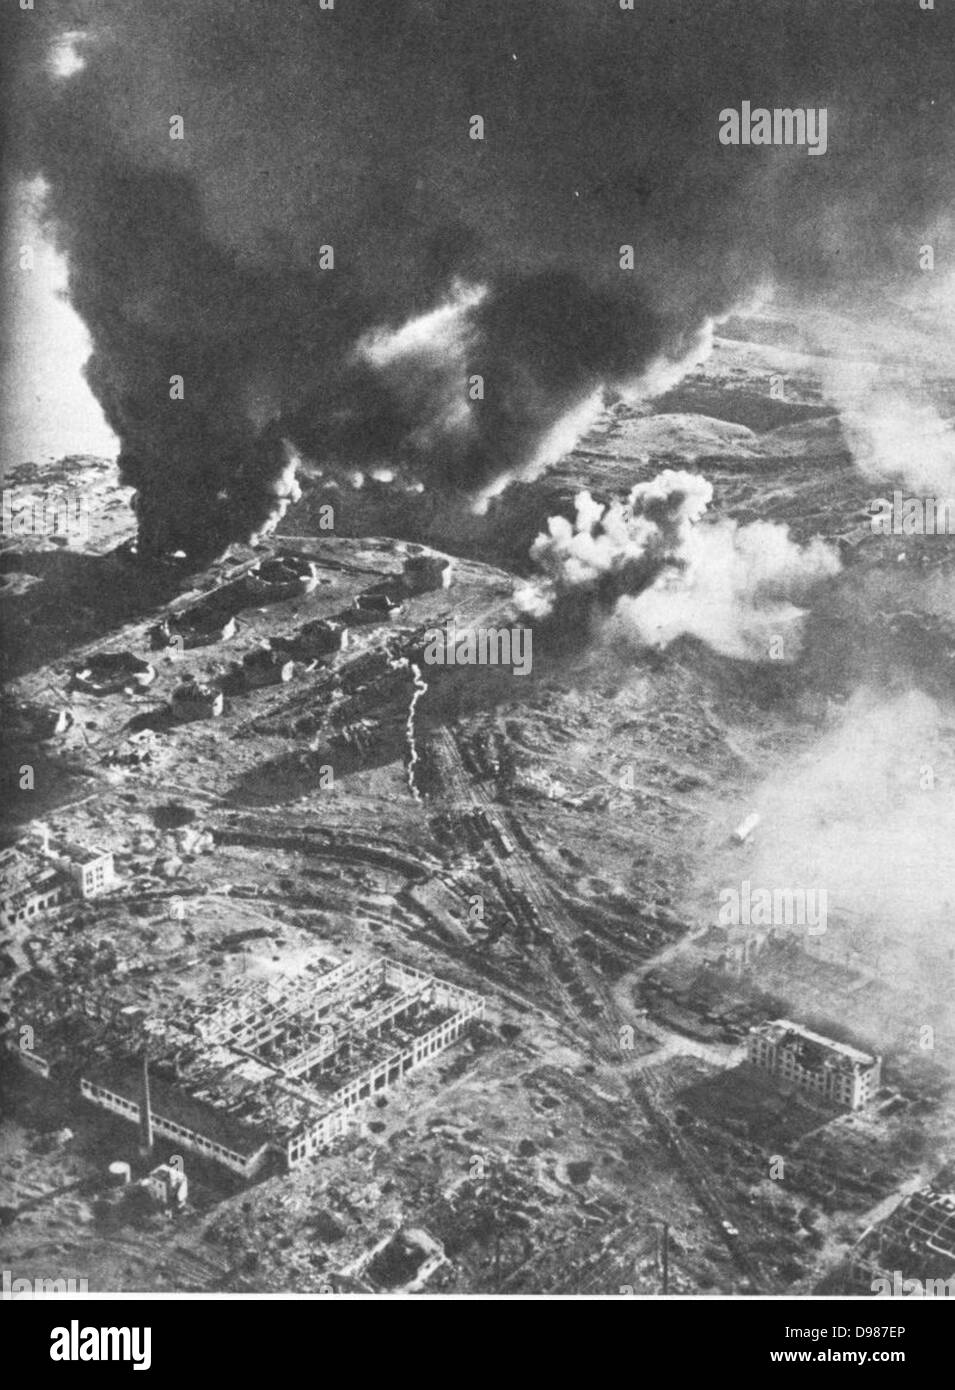 Schlacht um Stalingrad - Luftaufnahme von Kraftstoff Stores in Brand. Die Schlacht von Stalingrad zwischen Deutschland und der Sowjetunion dauerte vom 17. Juli 1942 bis 2. Februar 1943. Die mosty brutale und Blutigsten der Engagements des Zweiten Weltkrieges behauptete es fast 2 Millionen Tote. Es wird als Wendepunkt im Krieg zu sein, mit der Sowjetunion siegreich. Stockfoto